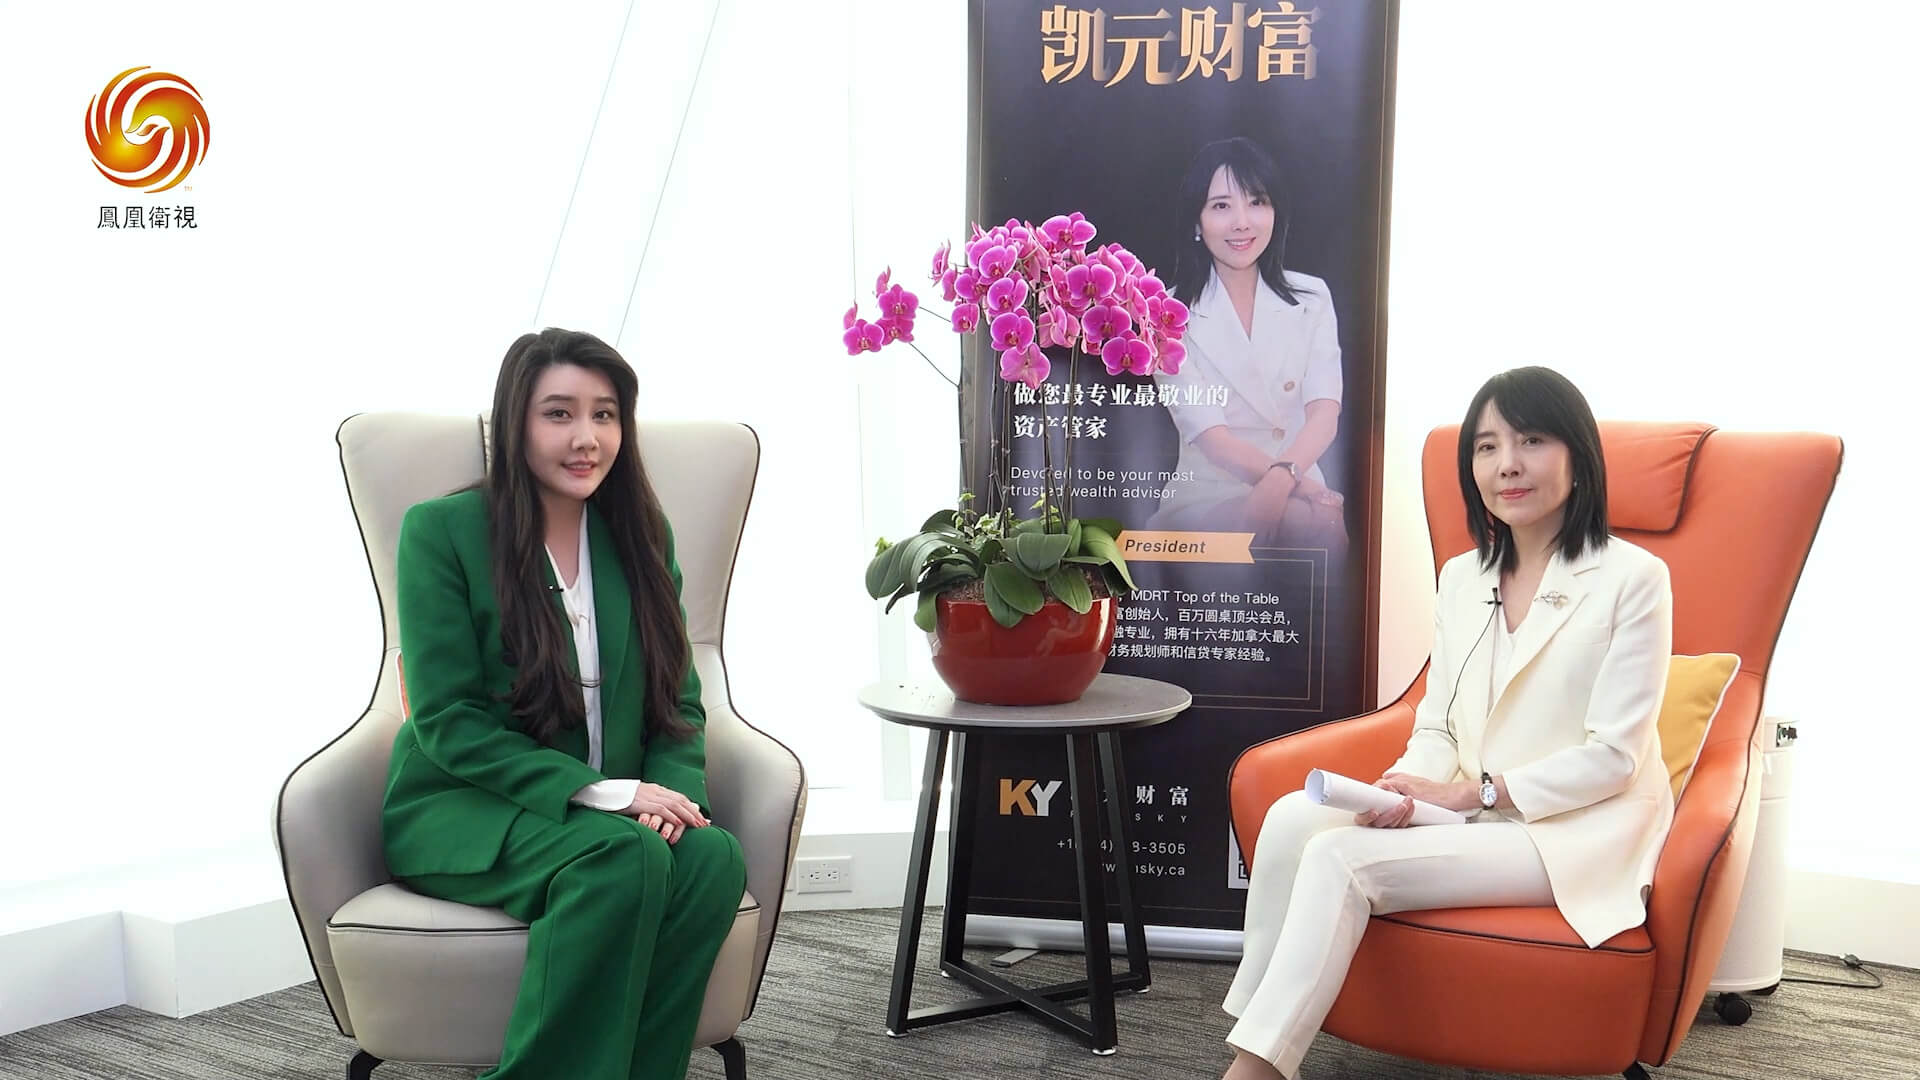 专访首届国际华语原创IP电影节冠名赞助商凯元财富总裁王婷 上